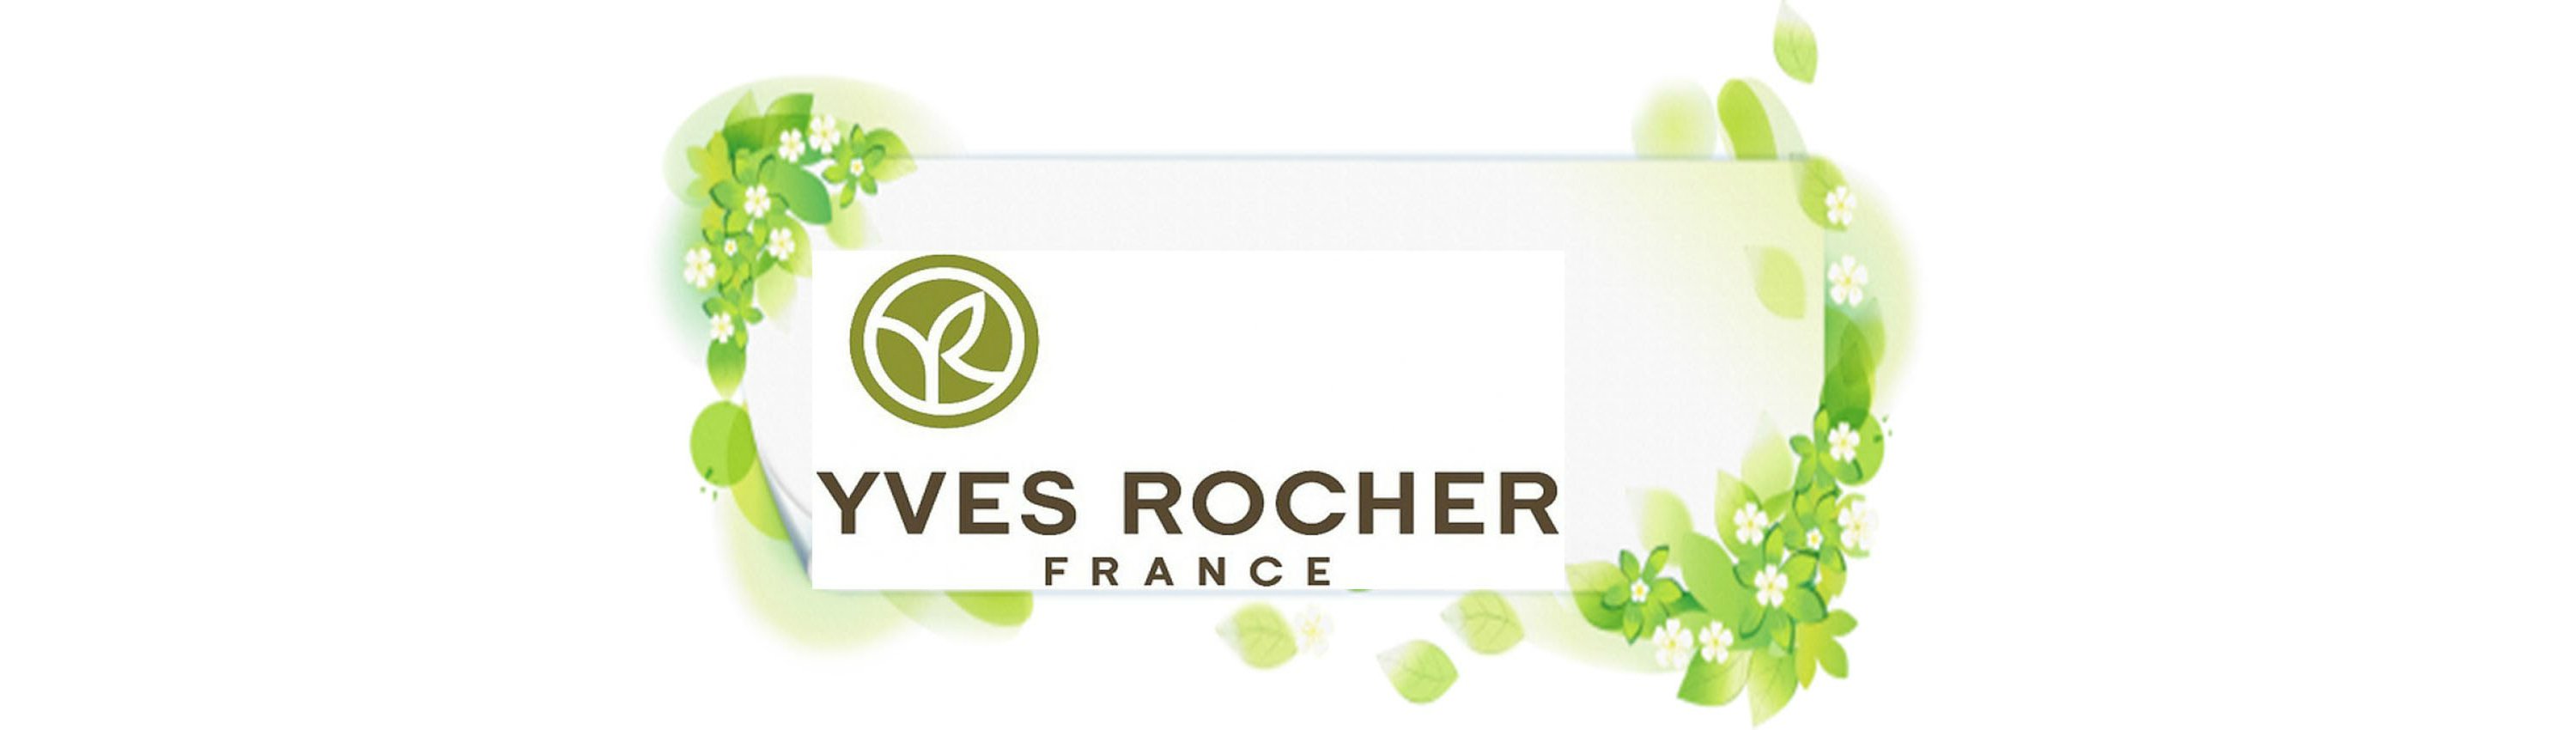 Ив роше киров. Yves Rocher логотип. Ив Роше логотип на прозрачном фоне. Товарный знак Ив Роше. Yves Rocher логотип на прозрачном фоне.